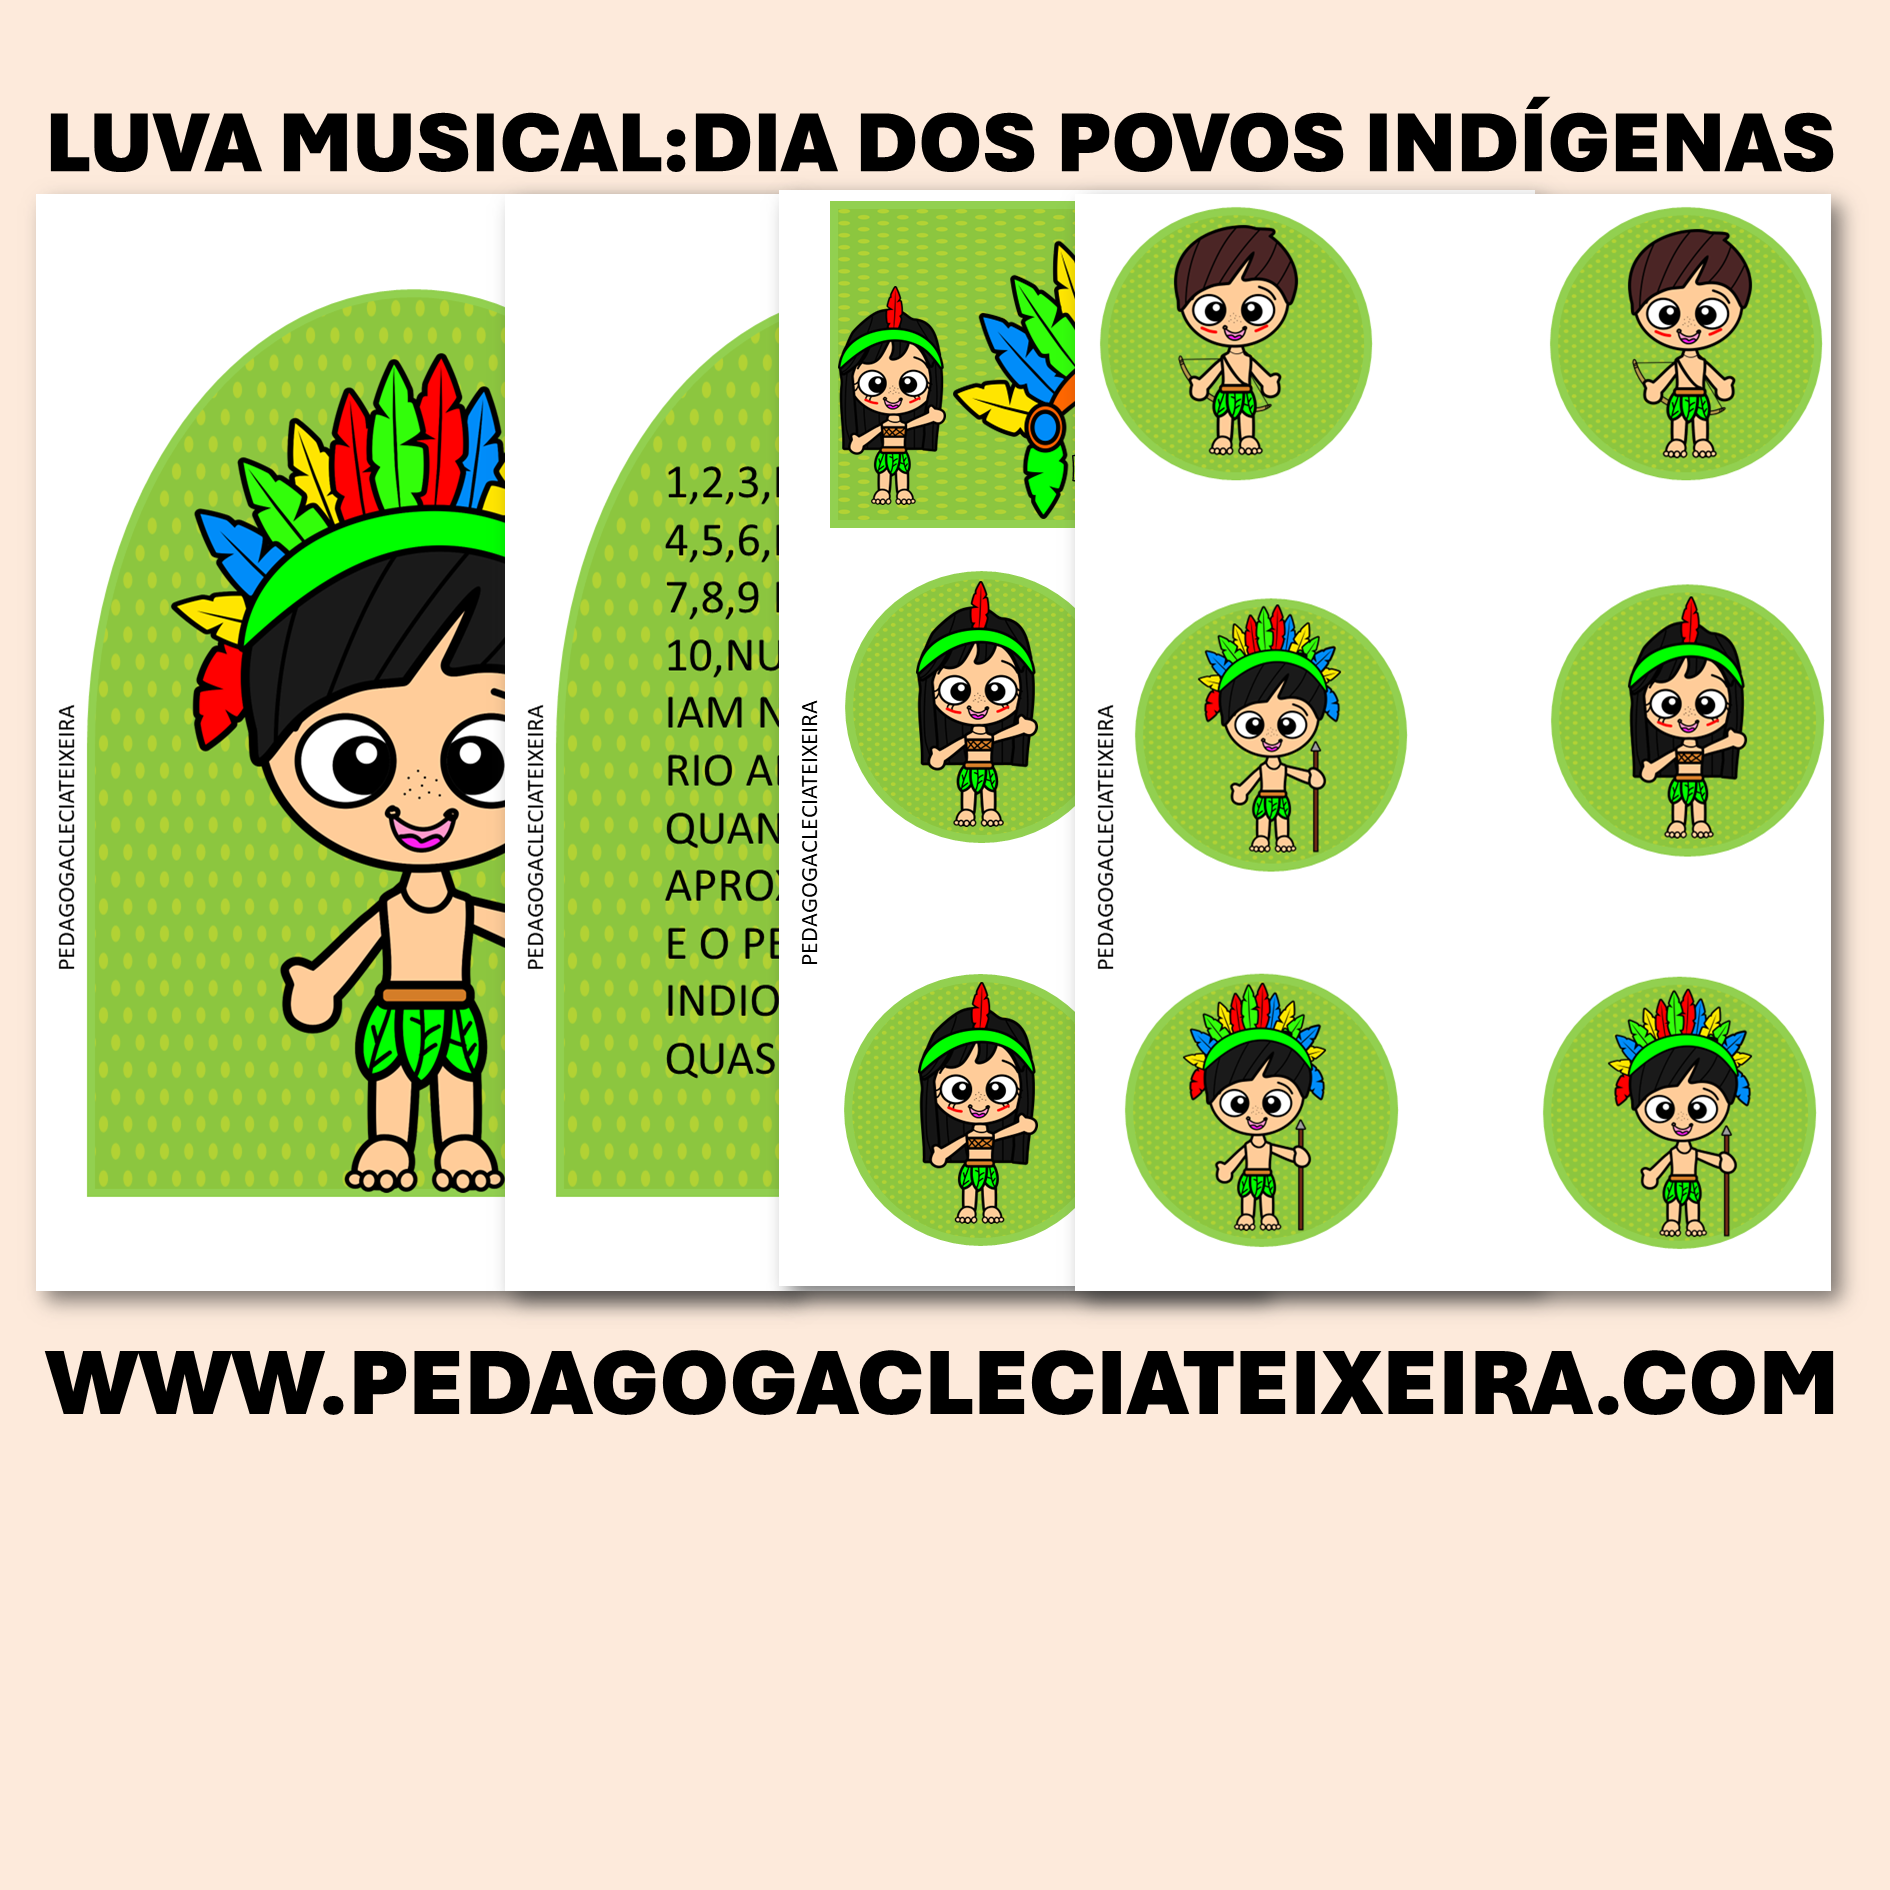 Luva musical:dia dos povos indígenas